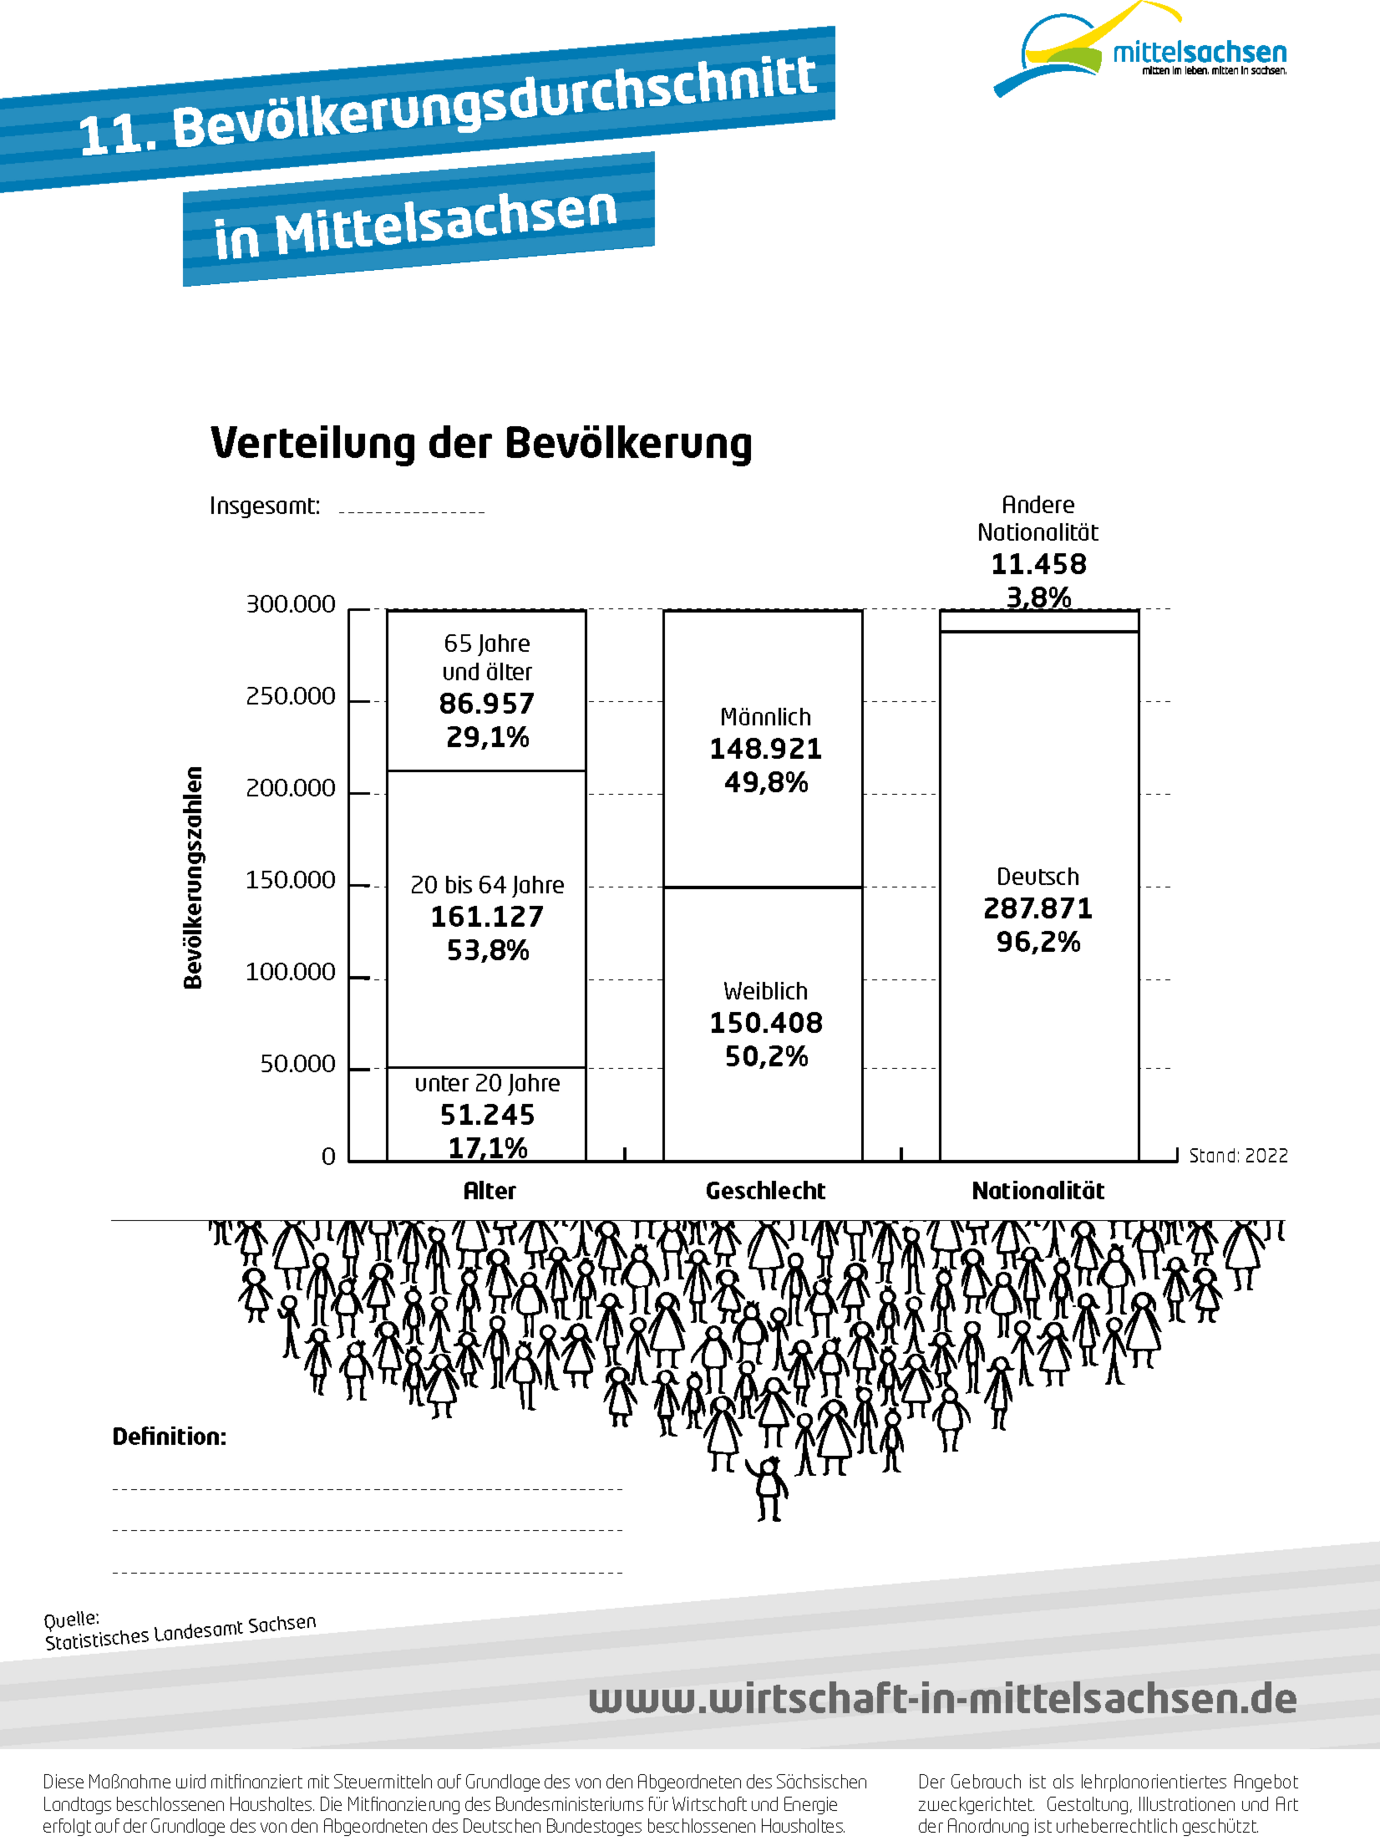 11. Bevölkerungsdurchschnitt in Mittelsachsen (Arbeitsblatt für Schüler)